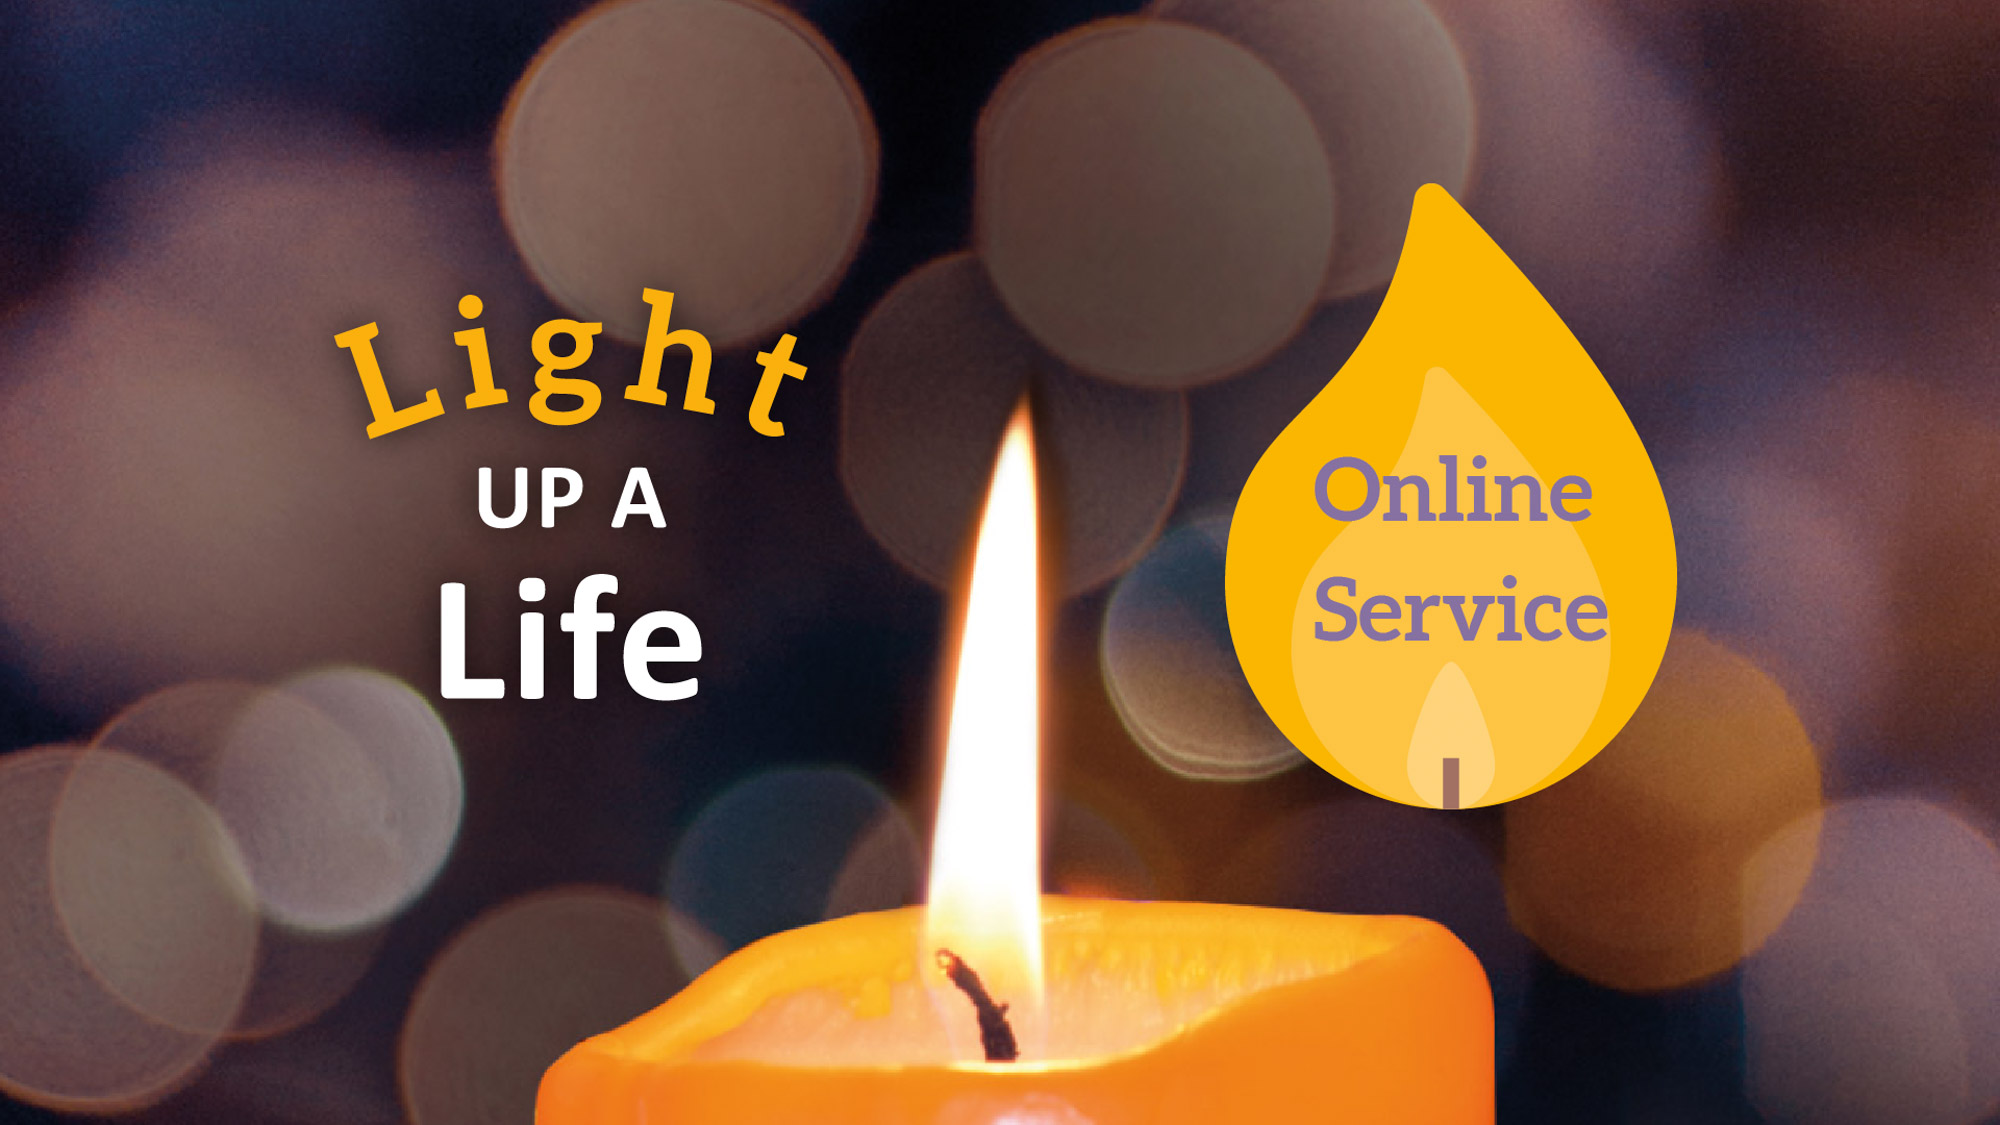 Light up a Life online service